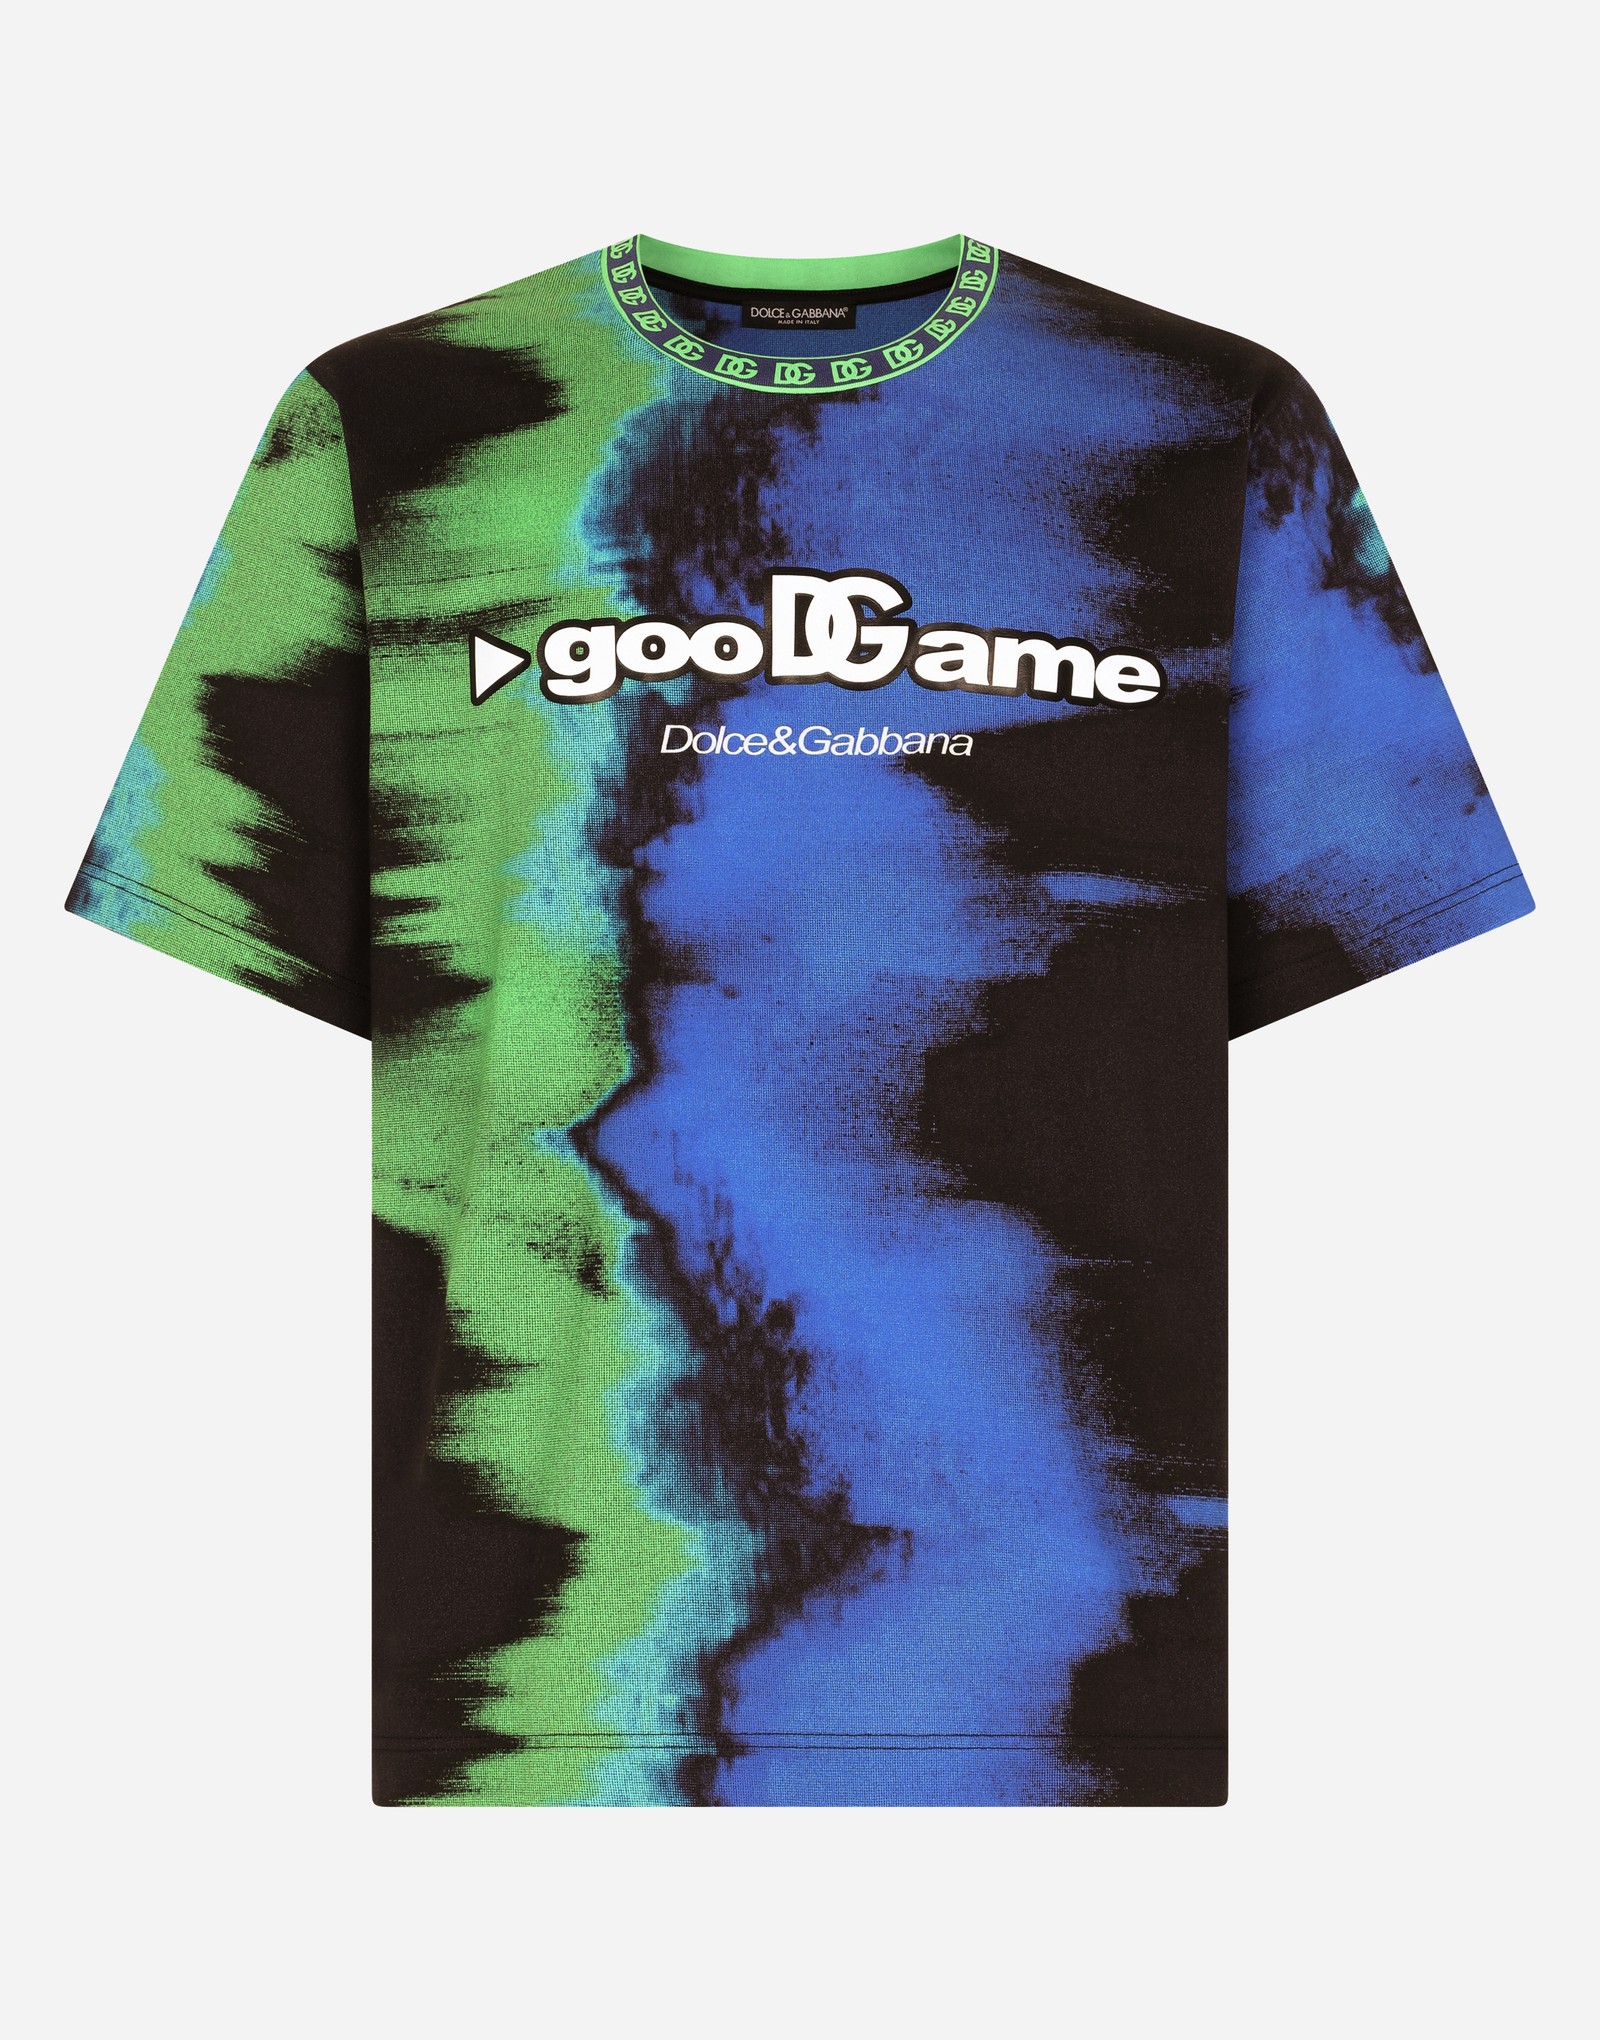 Dolce&Gabbana lança coleção limitada para gamers na série GooDGame — Foto: Divulgação